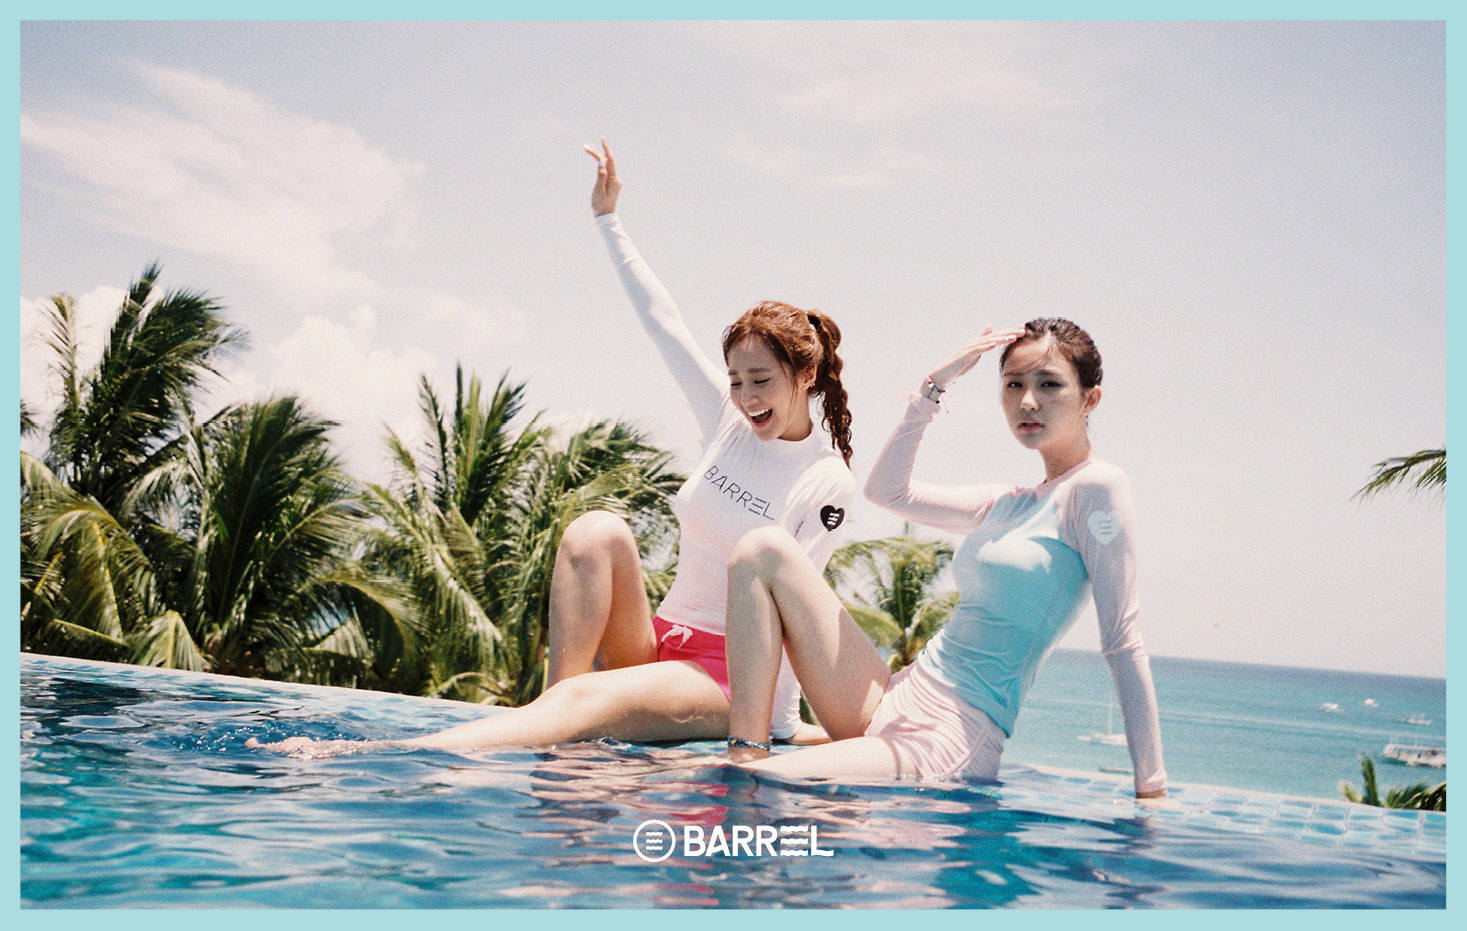 [OTHER][15-04-2016]Yuri trở thành người mẫu mới cho thương hiệu đồ bơi "BARREL" Yurivivian_boracay19